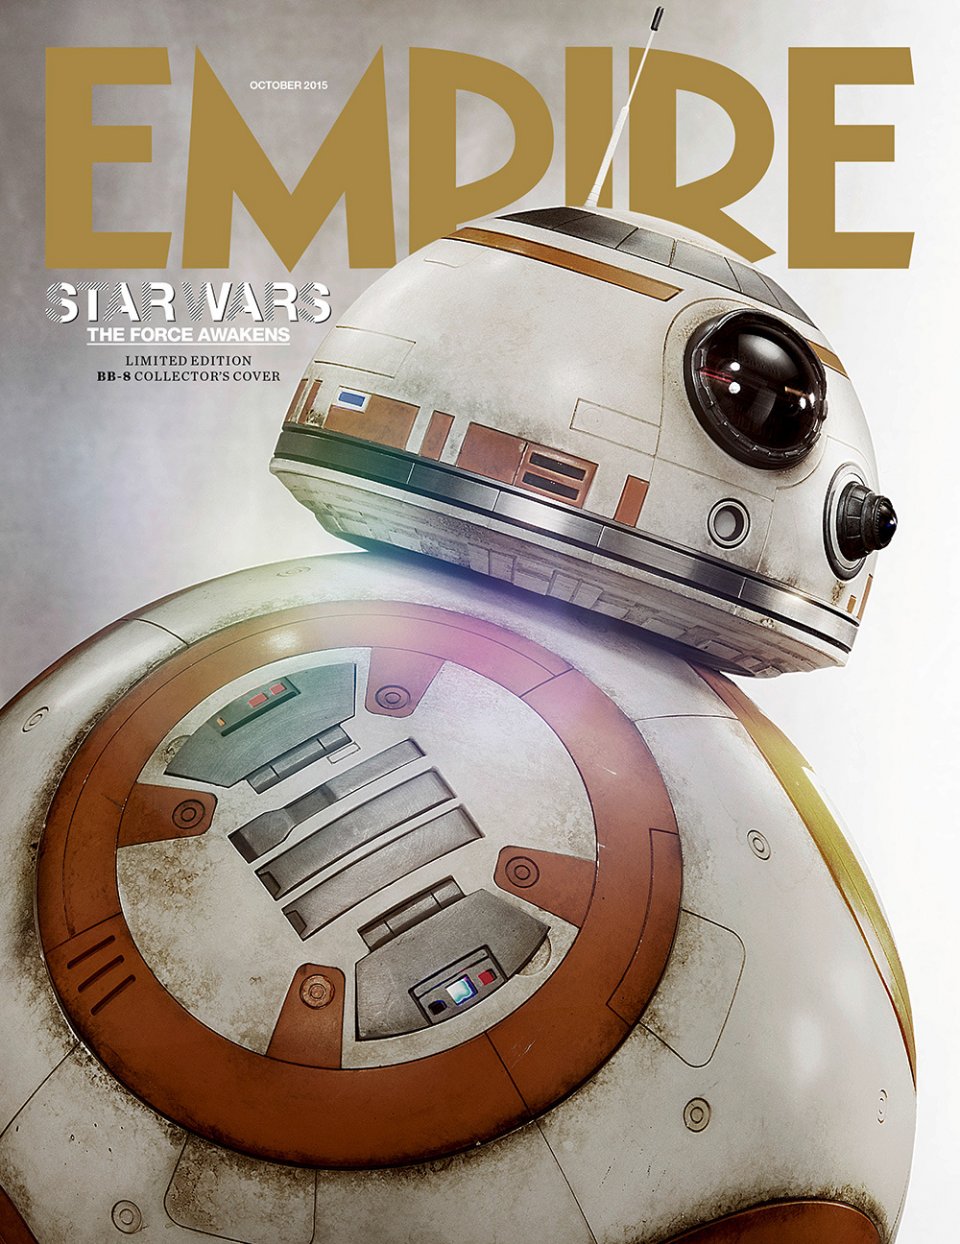 Star Wars: Episodio VII - Il Risveglio della Forza - La copertina di Empire dedicata a BB-8